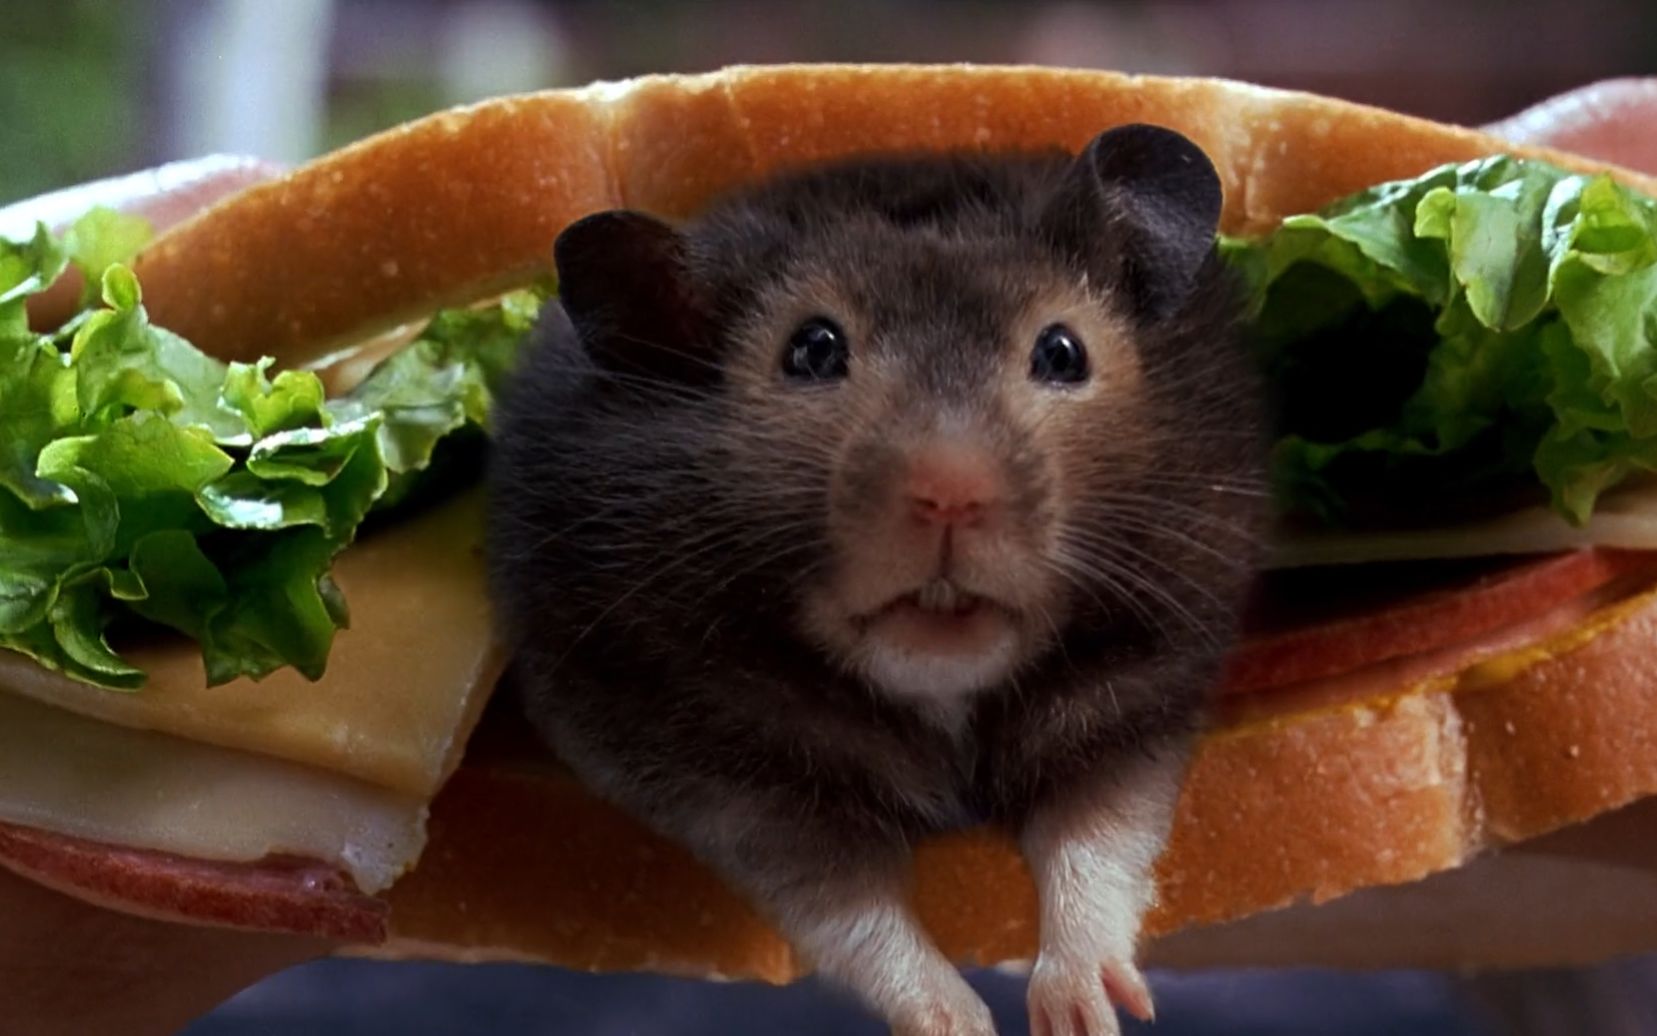 美女正在吃三明治，突然出现一只老鼠，求她此刻心理阴影面积